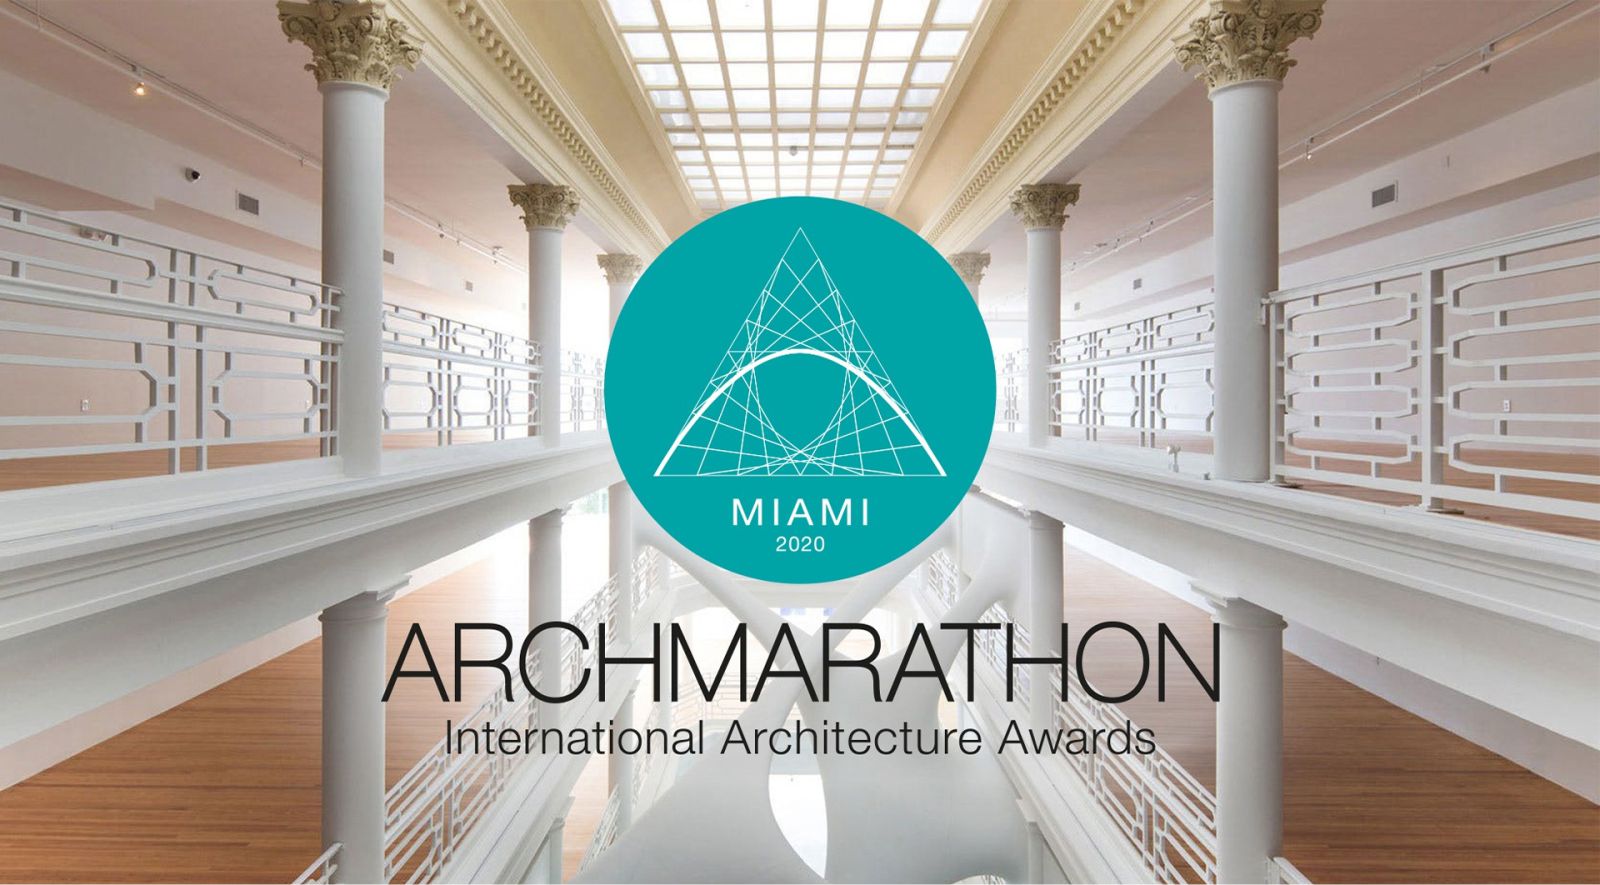 ARCHMARATHON Awards Miami 2020